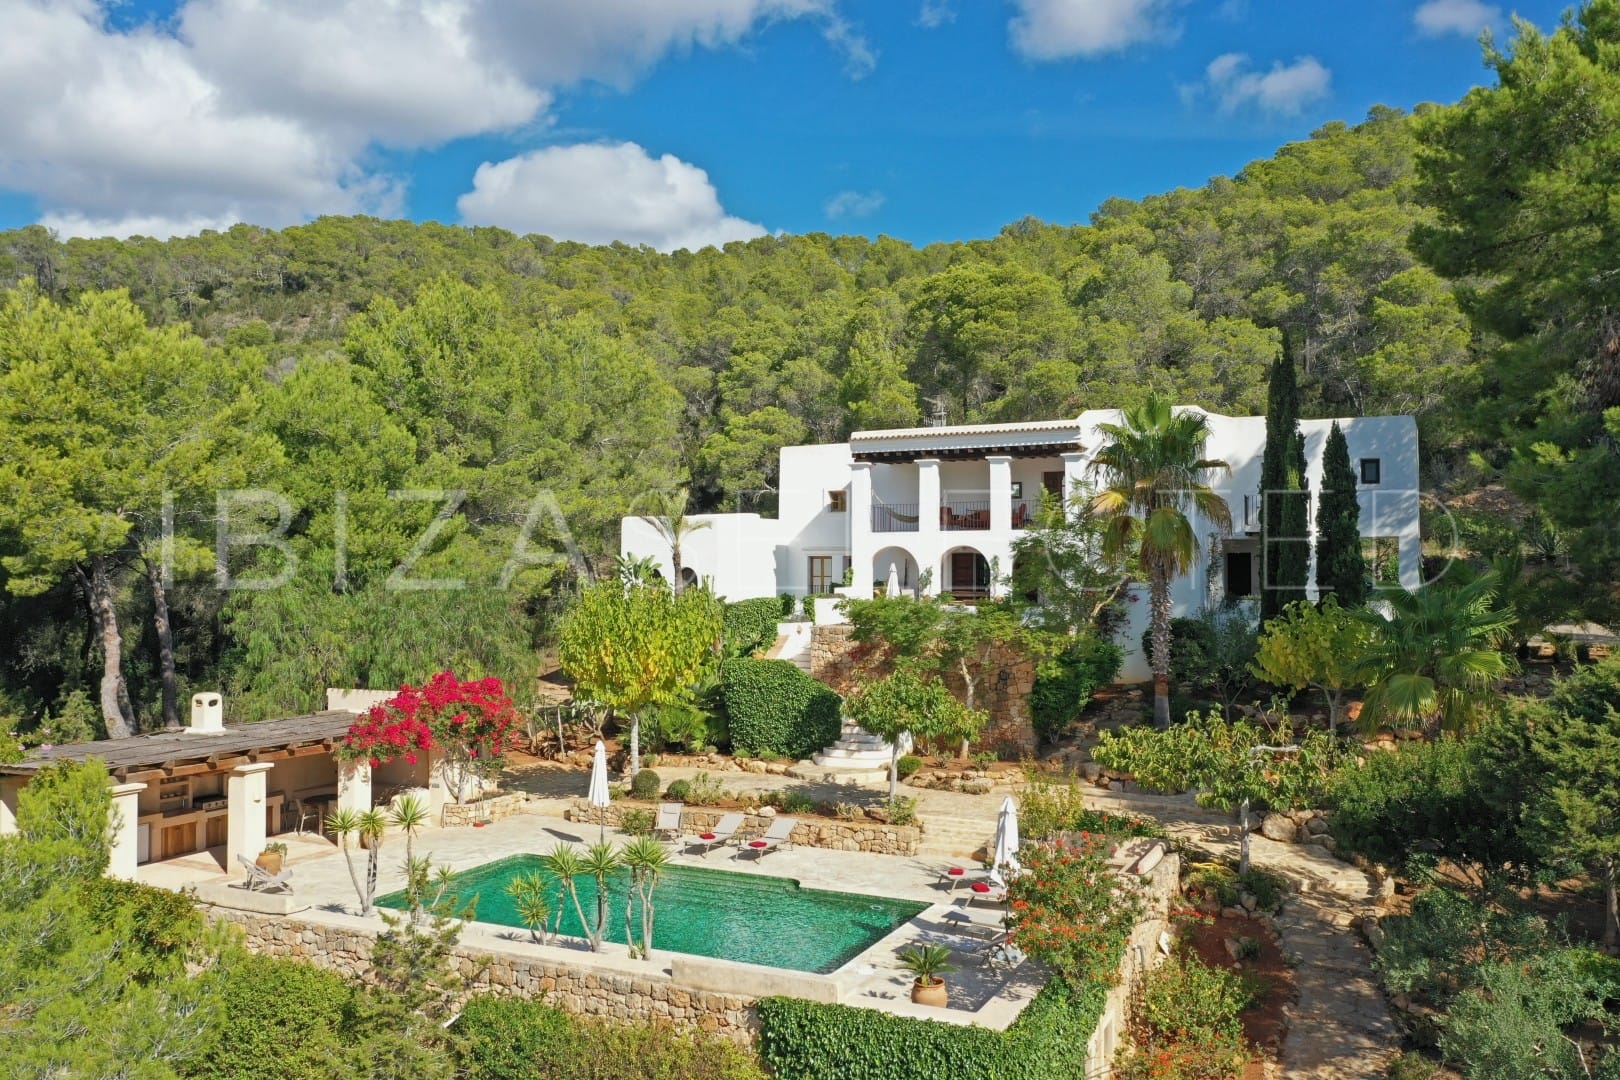 Top 18 Vacation Rentals in Ibiza